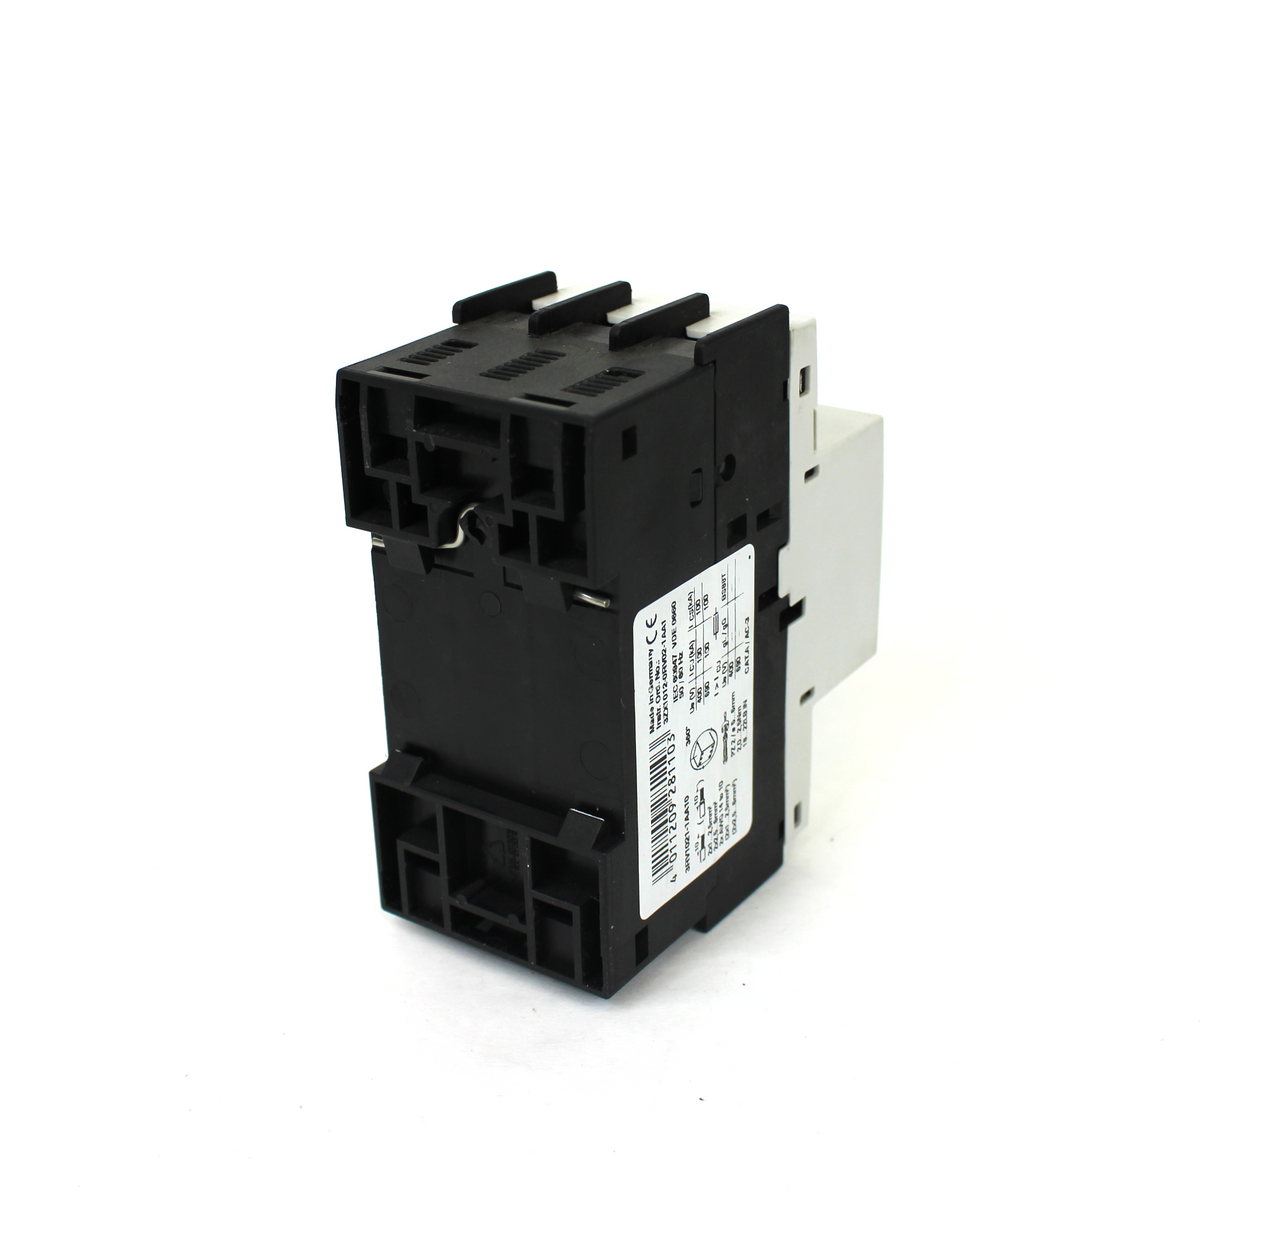 Siemens 3RV1021-1AA10 Circuit Breaker 1.6A, 3 Pole